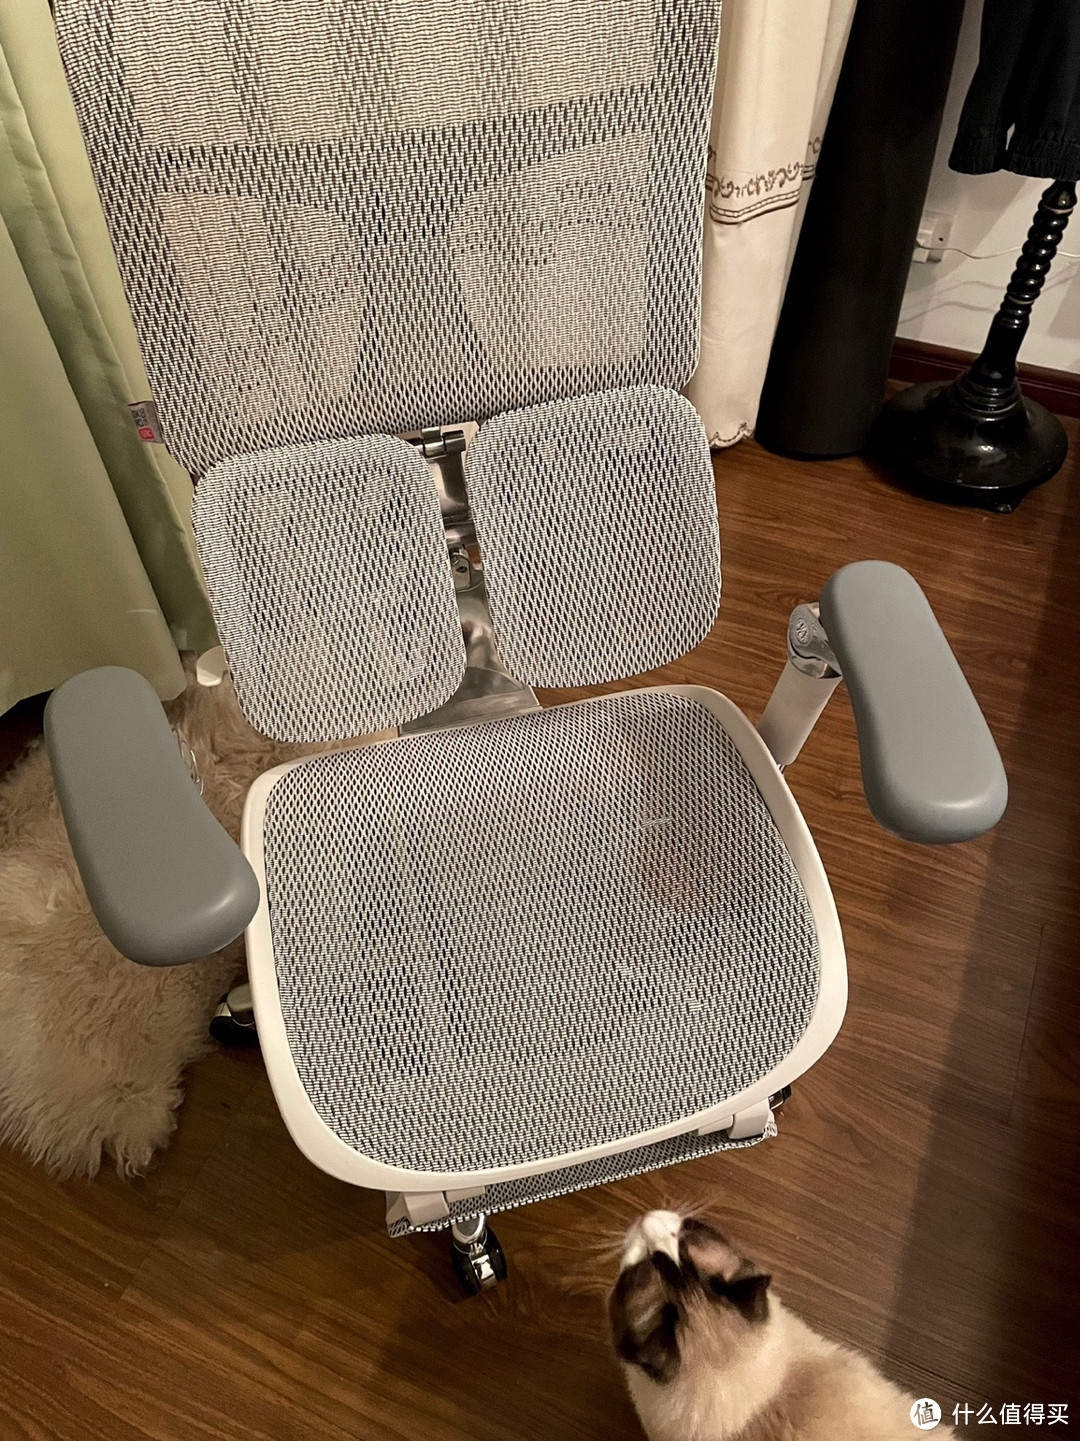 西昊人体工学椅作为一款符合人体工程学原理的办公椅，对身体健康有着积极的影响